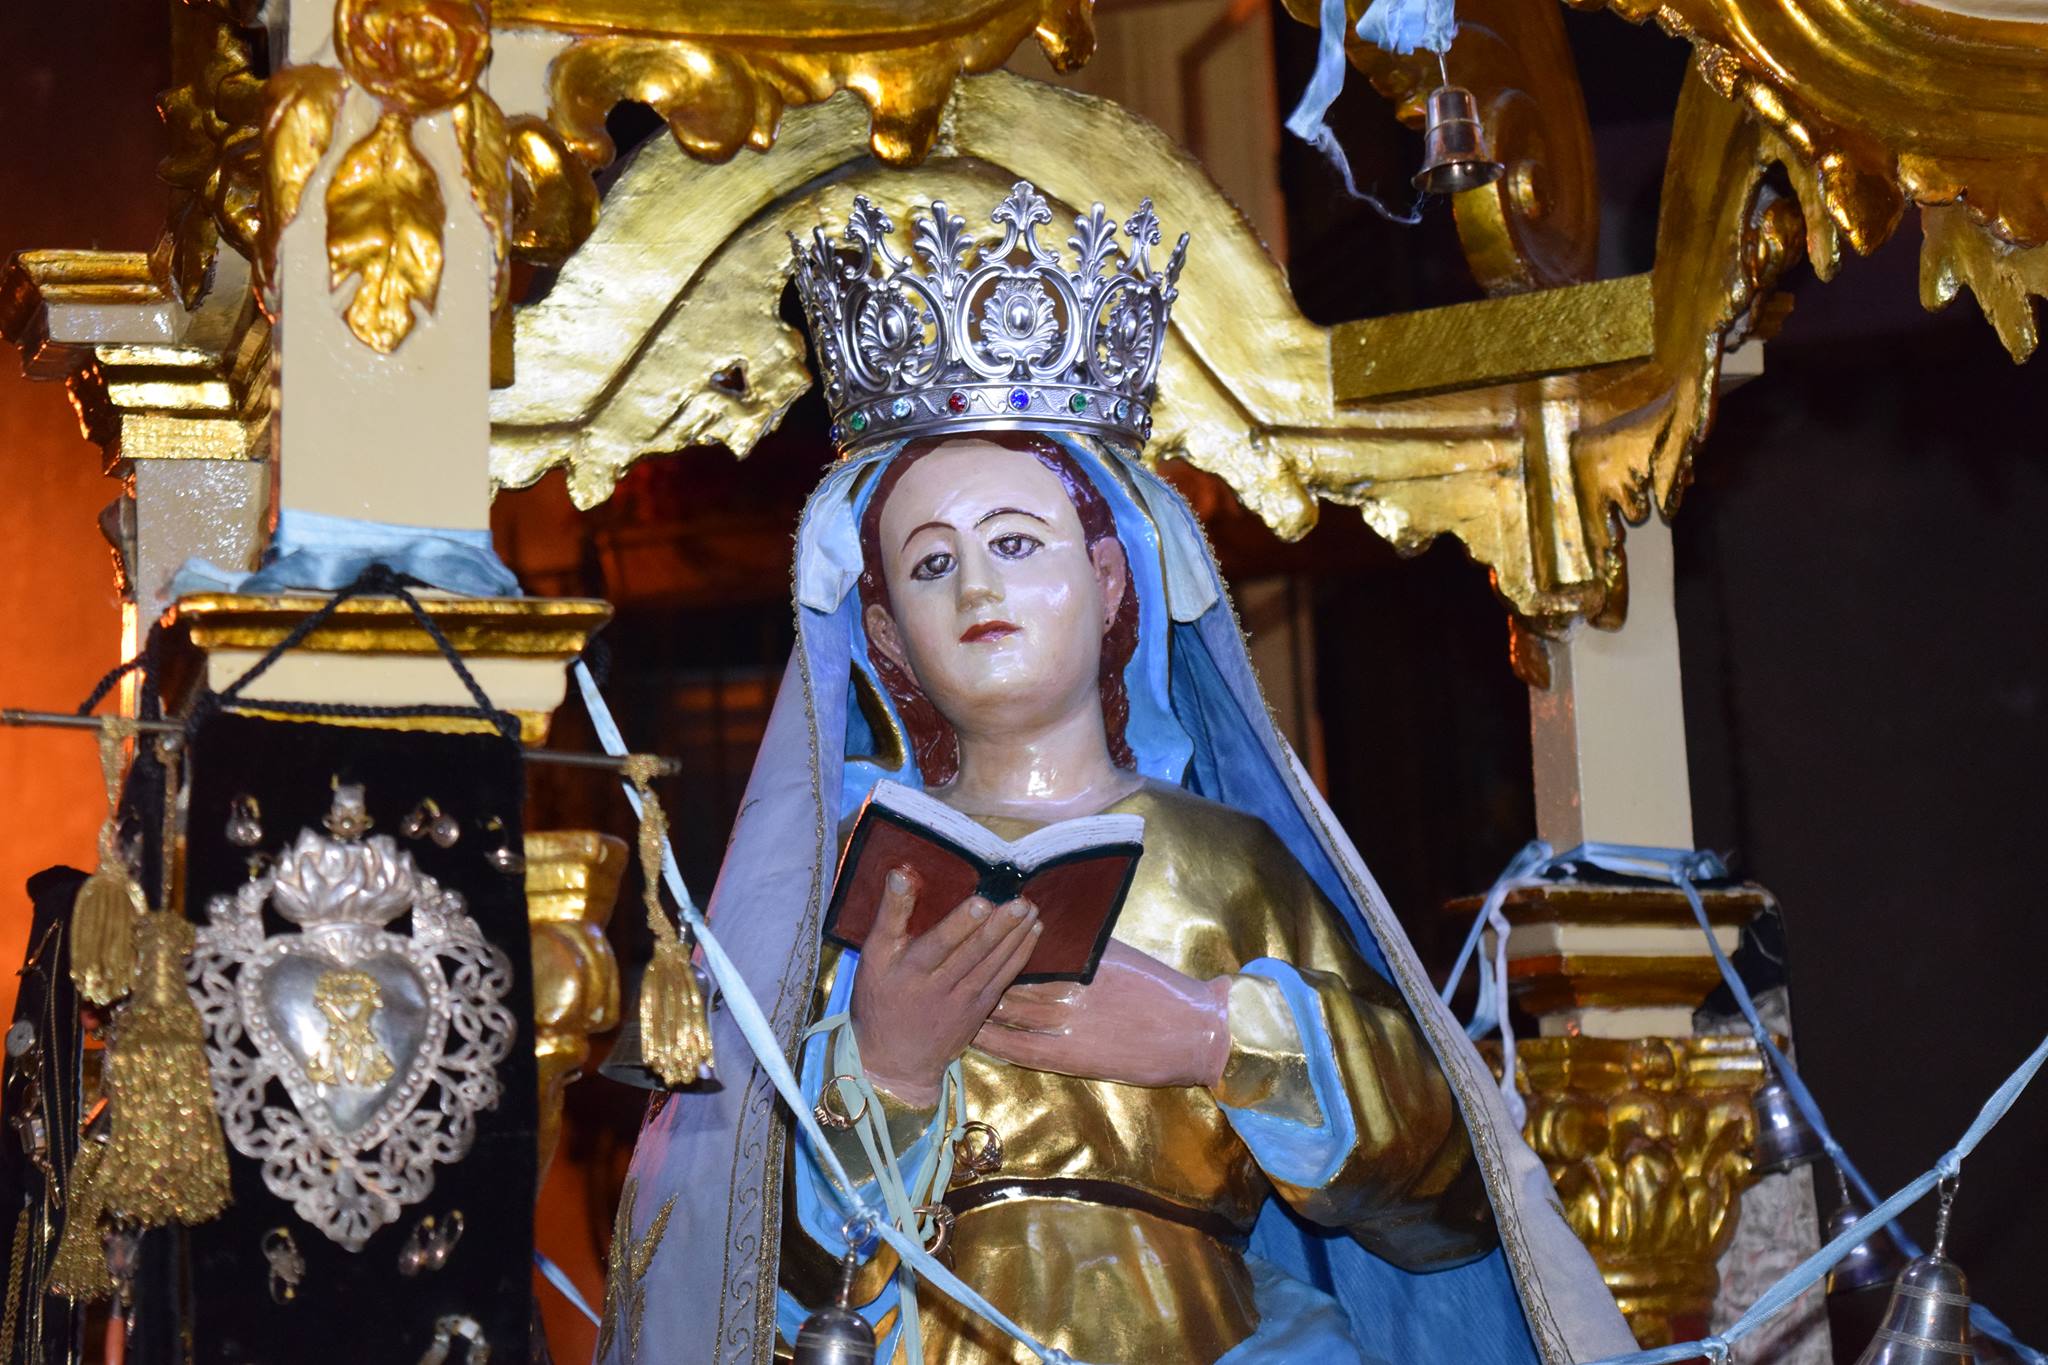 Brolo – Parrocchia S.S Annunziata, domani le messe saranno celebrate al palatenda